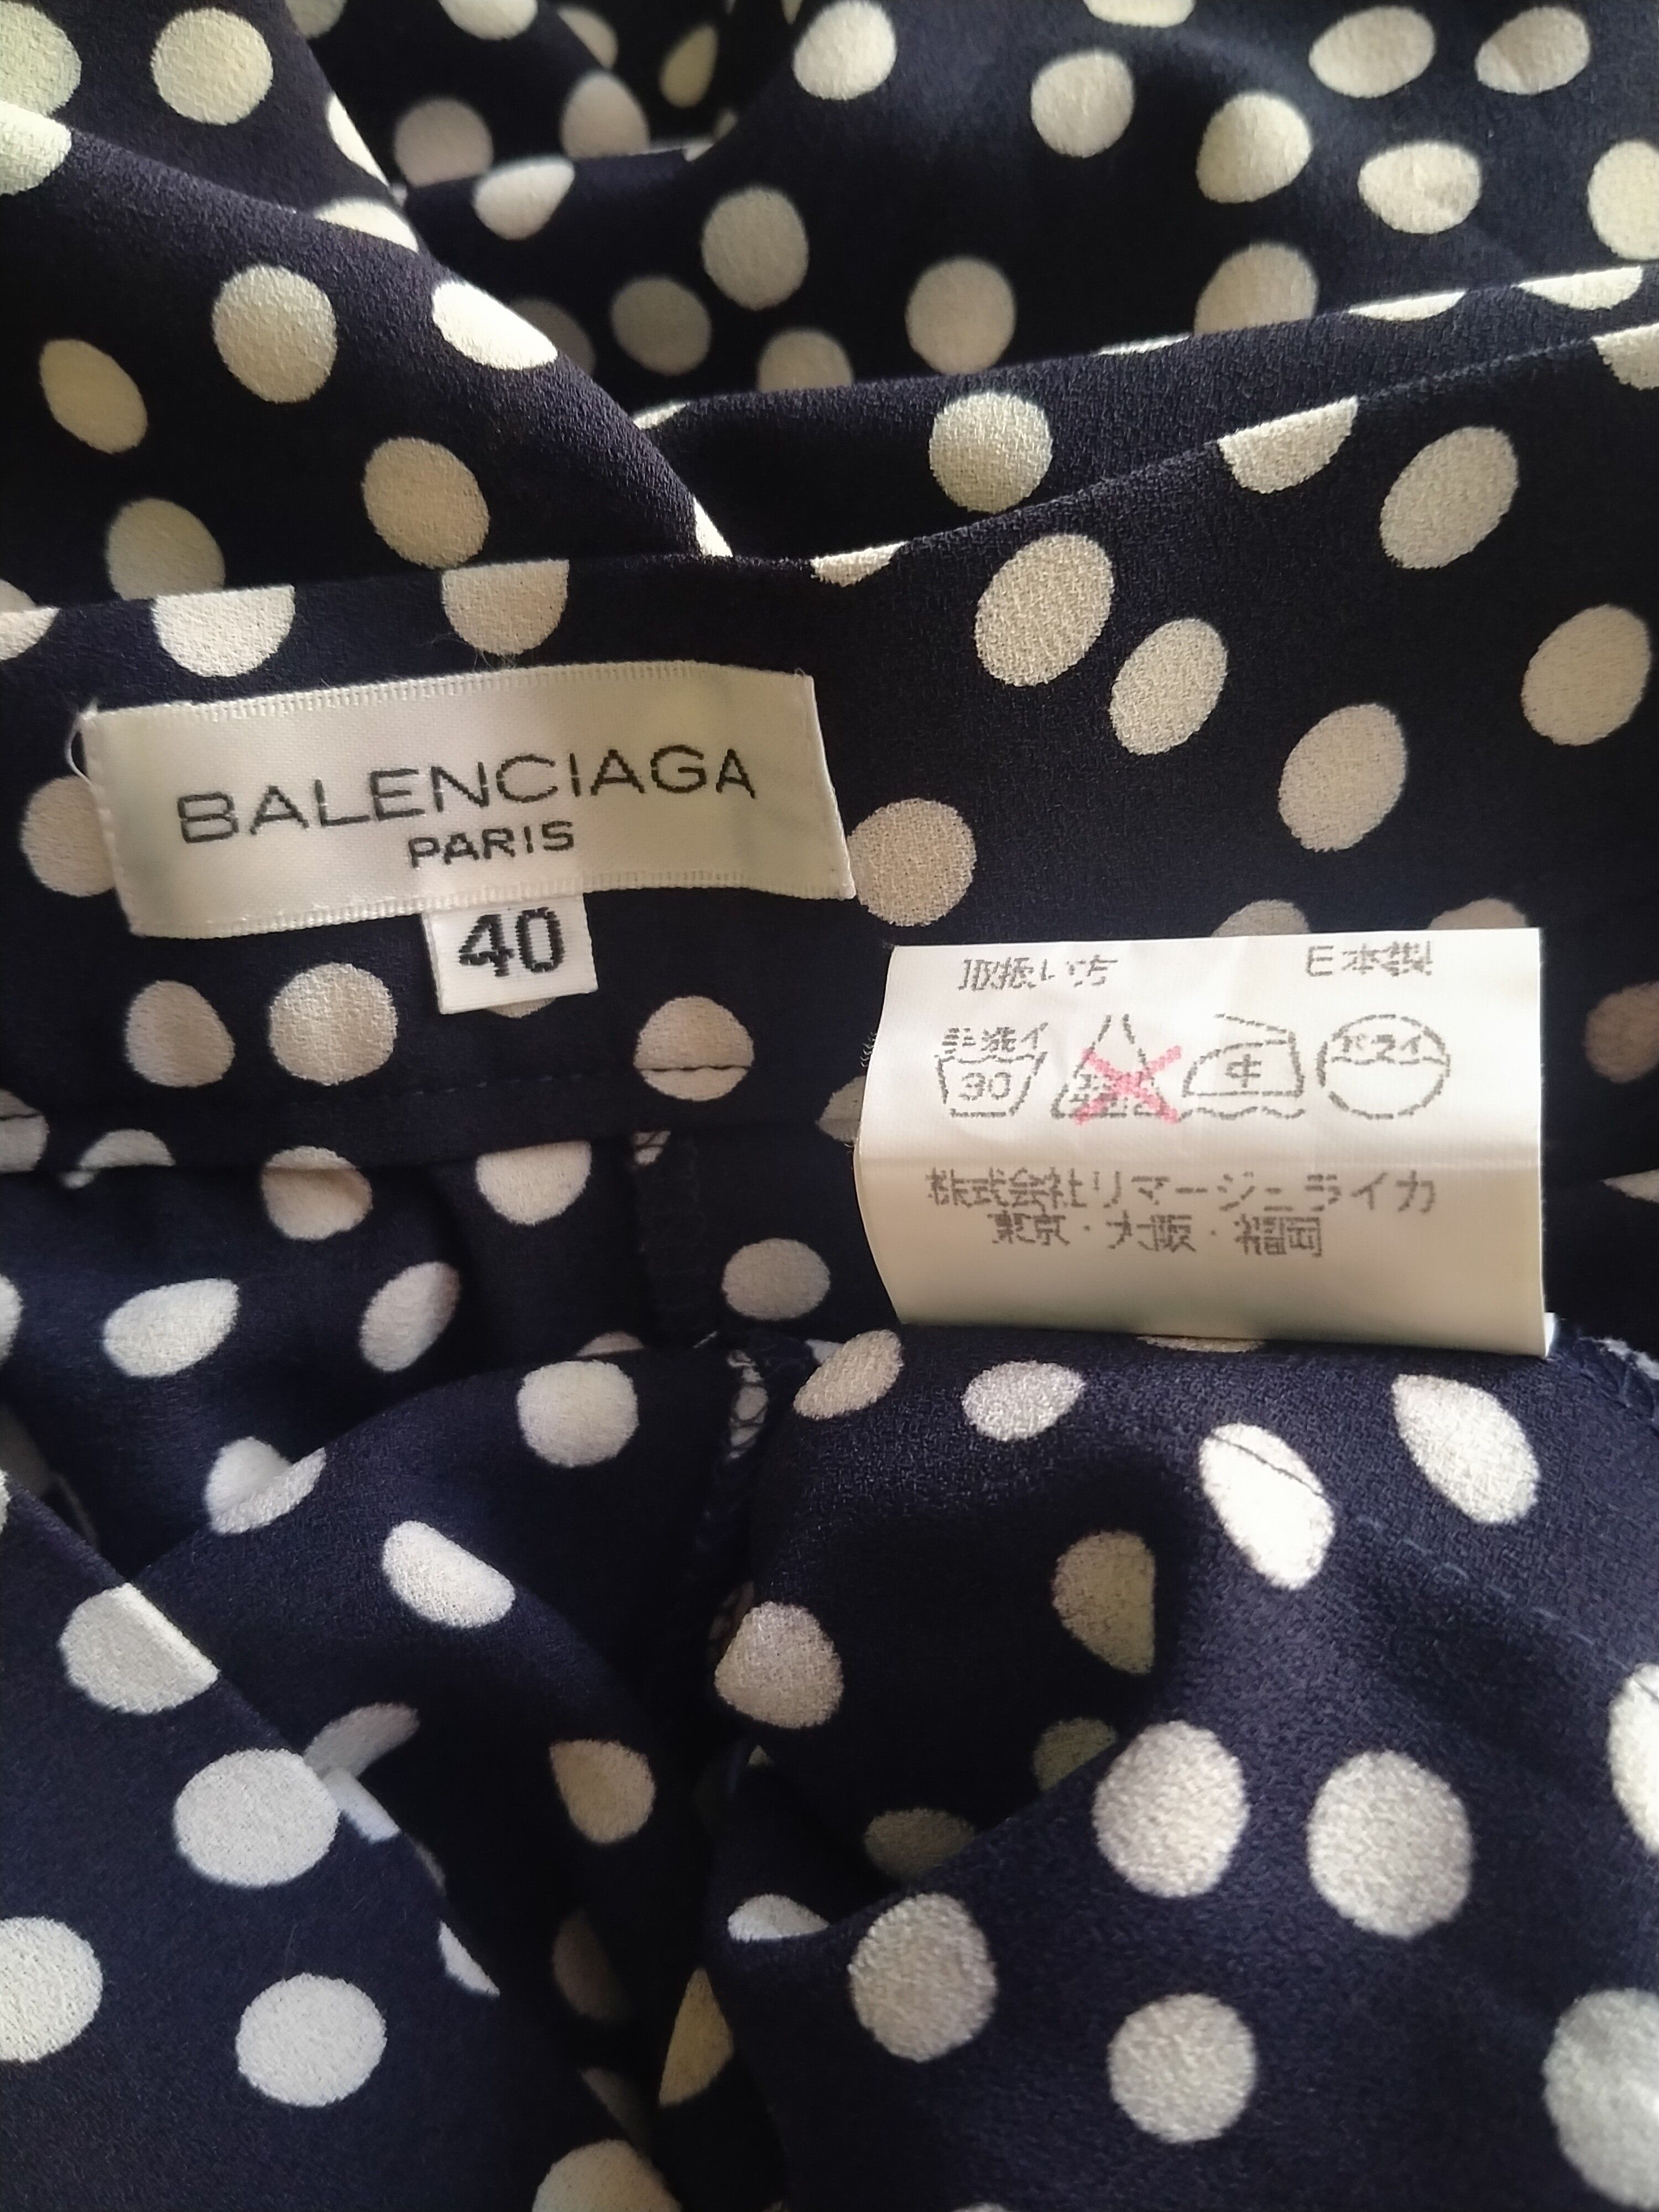 Balenciaga Rare!! Vintage Balenciaga Paris Polka Dot Side Zipper Pant Size US 30 / EU 46 - 11 Preview